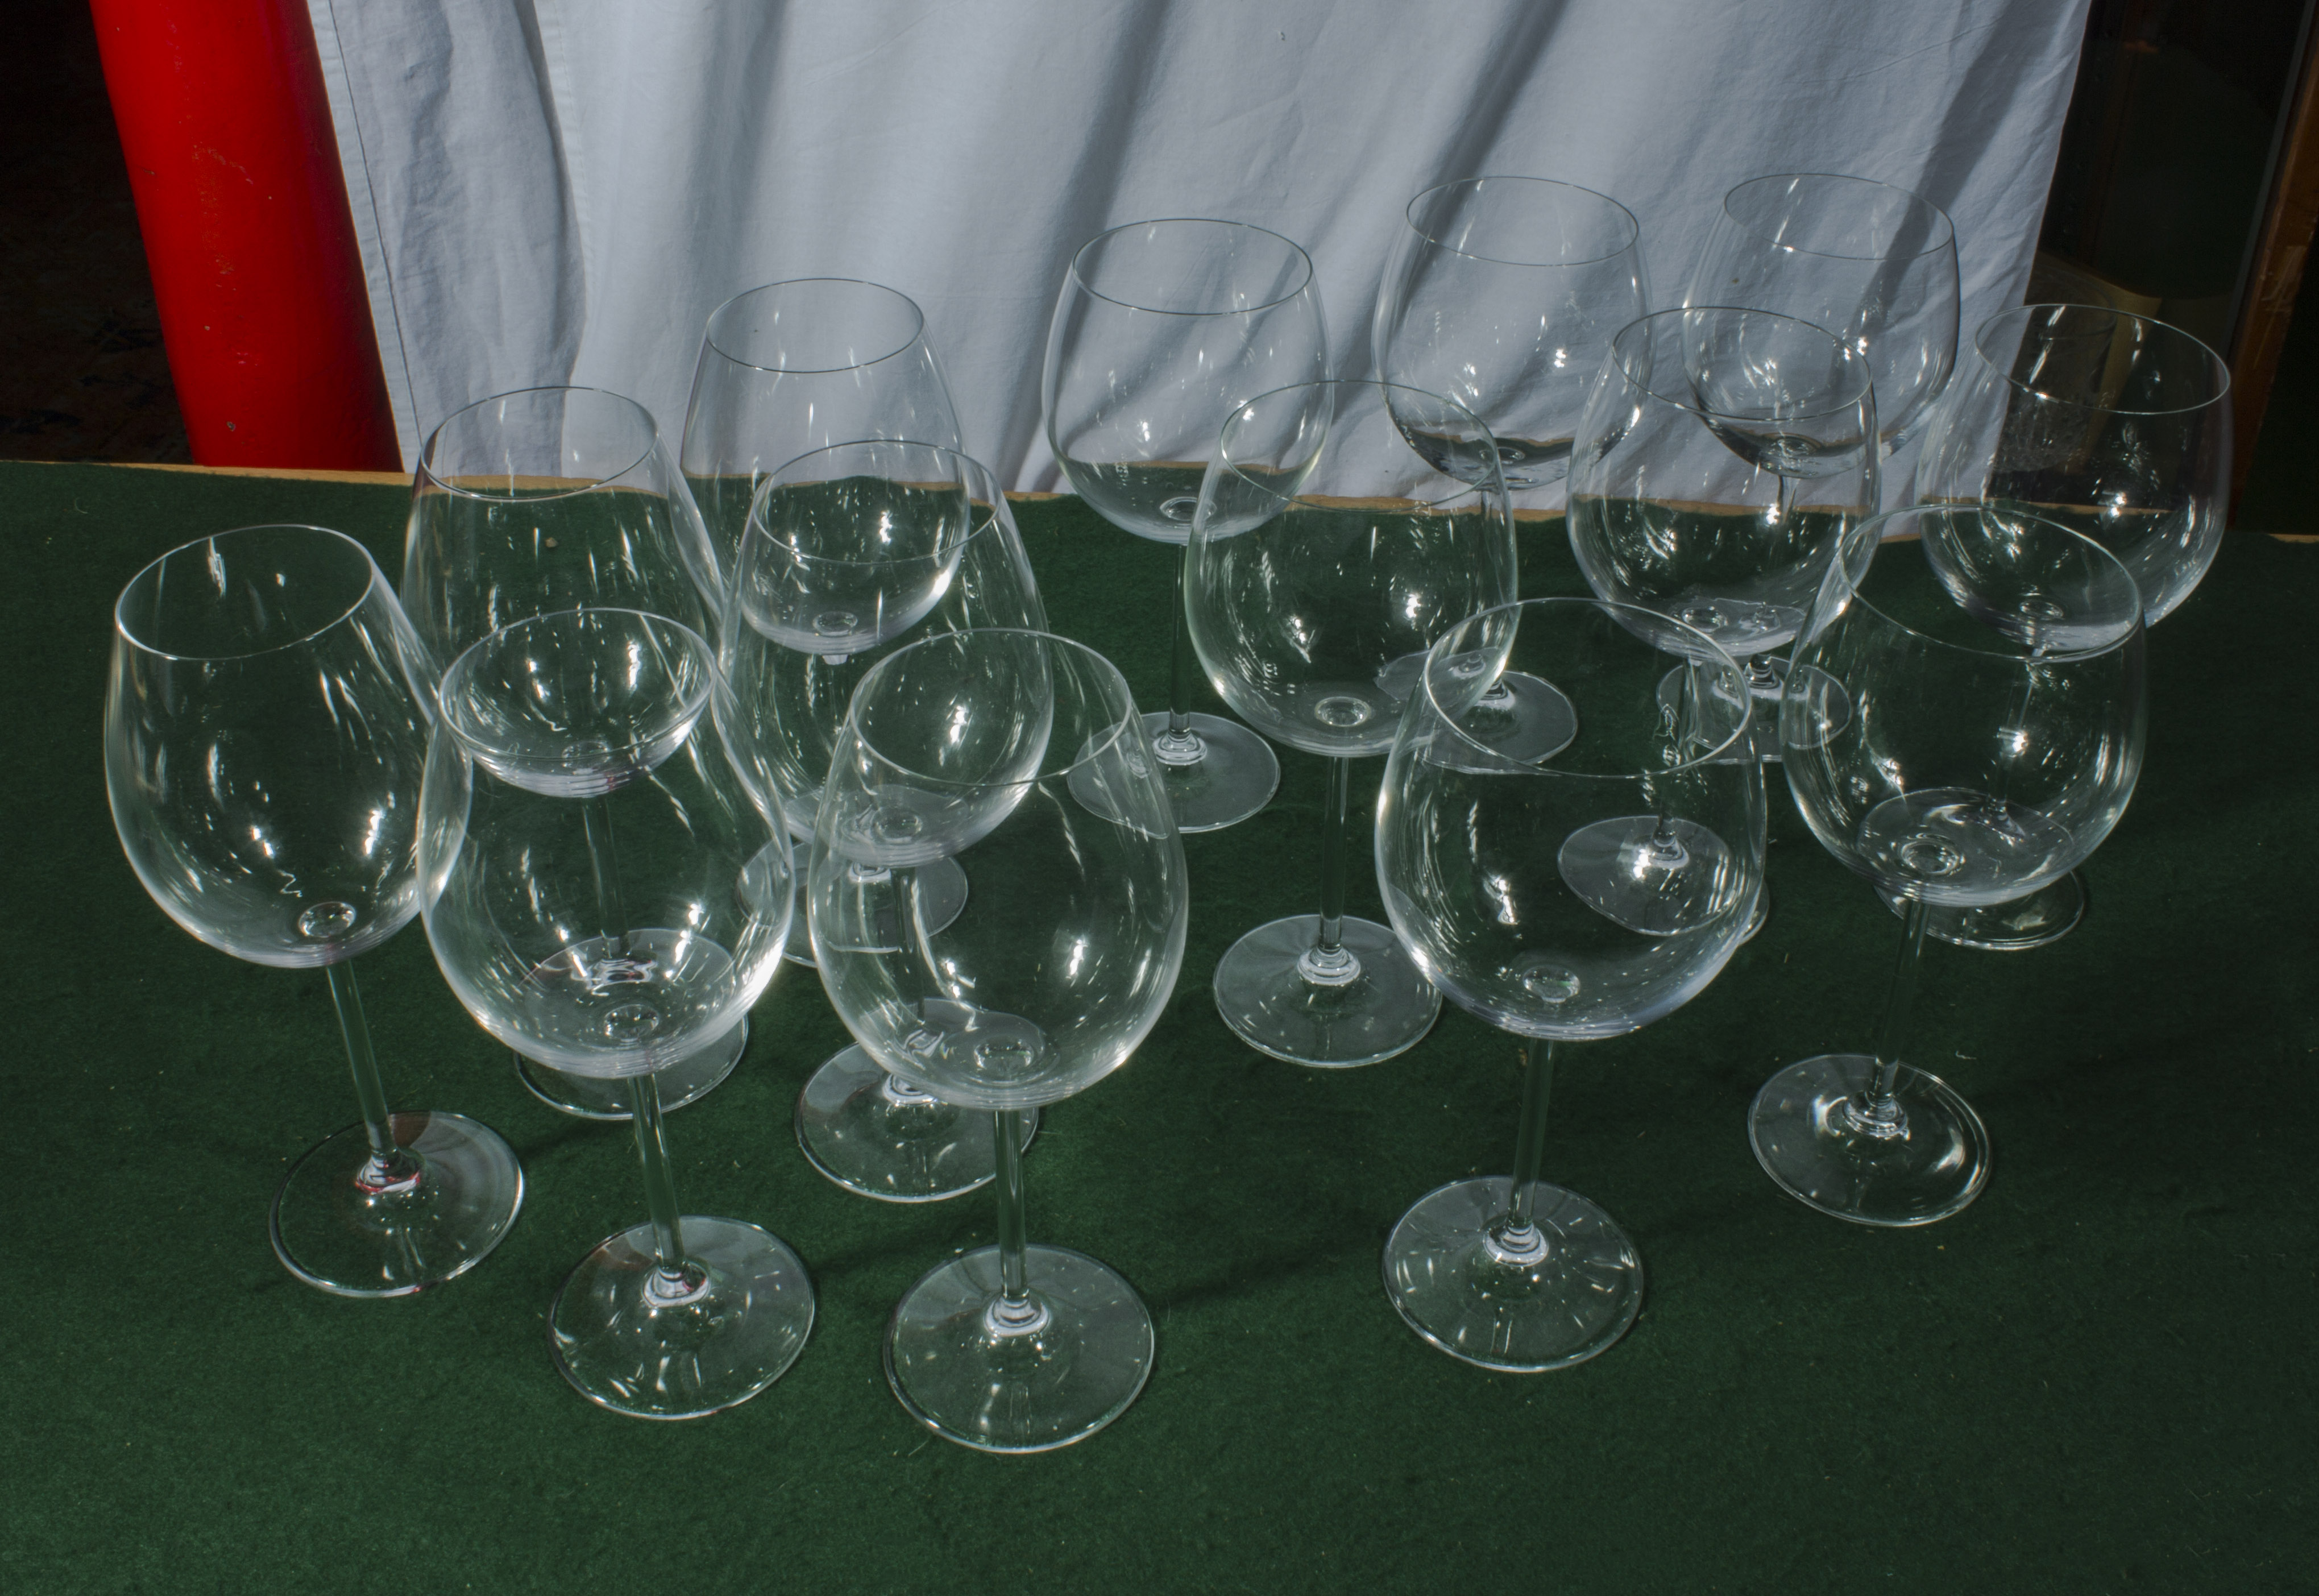 A quantity of wine glasses